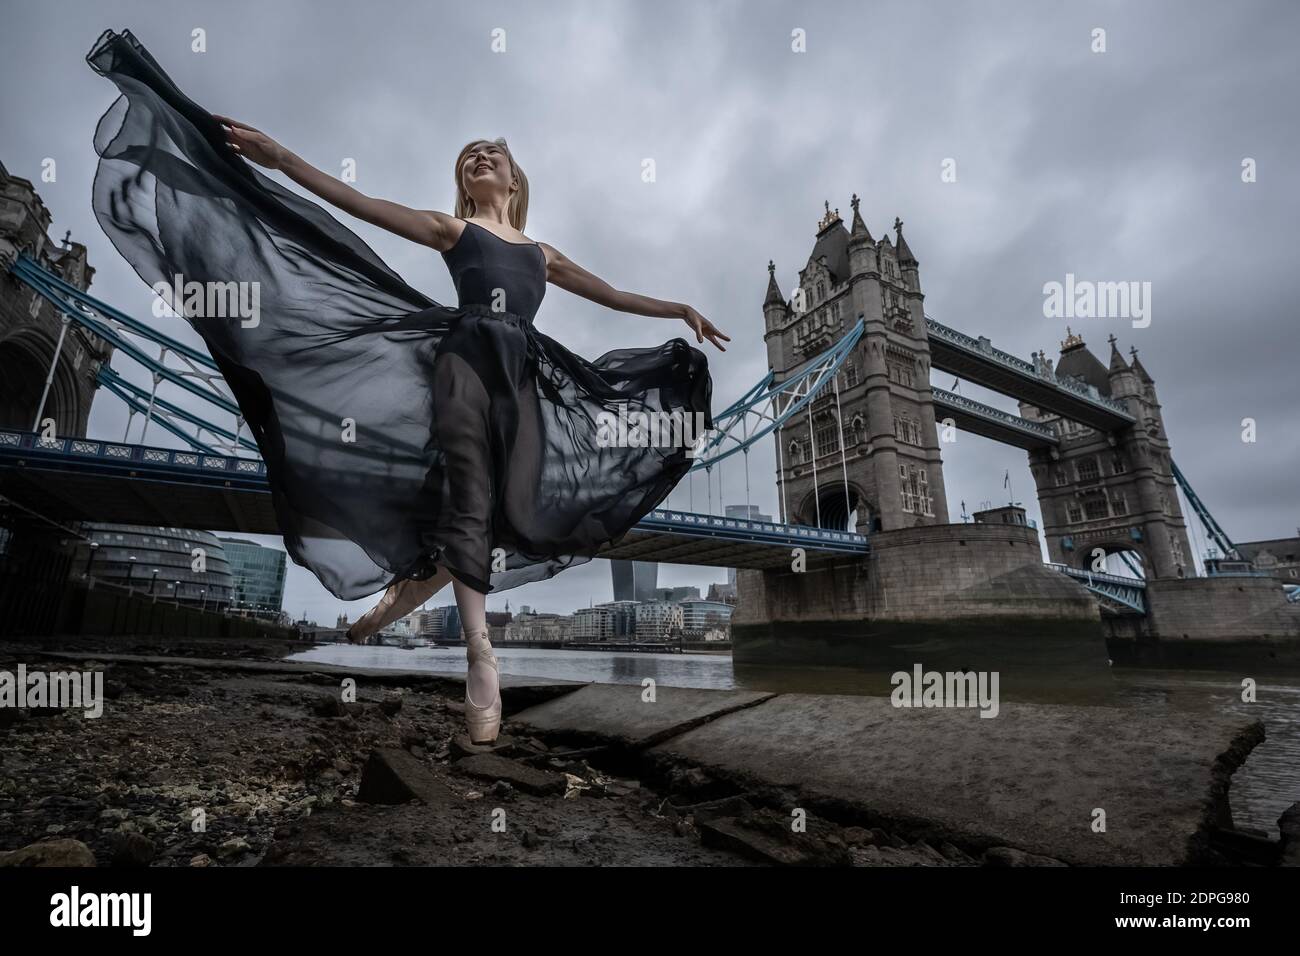 Natsuki Uemura, una profesora independiente de ballet y danza contemporánea, realiza una rutina de baile temprano en la mañana cerca de Tower Bridge, Londres, Reino Unido. Foto de stock